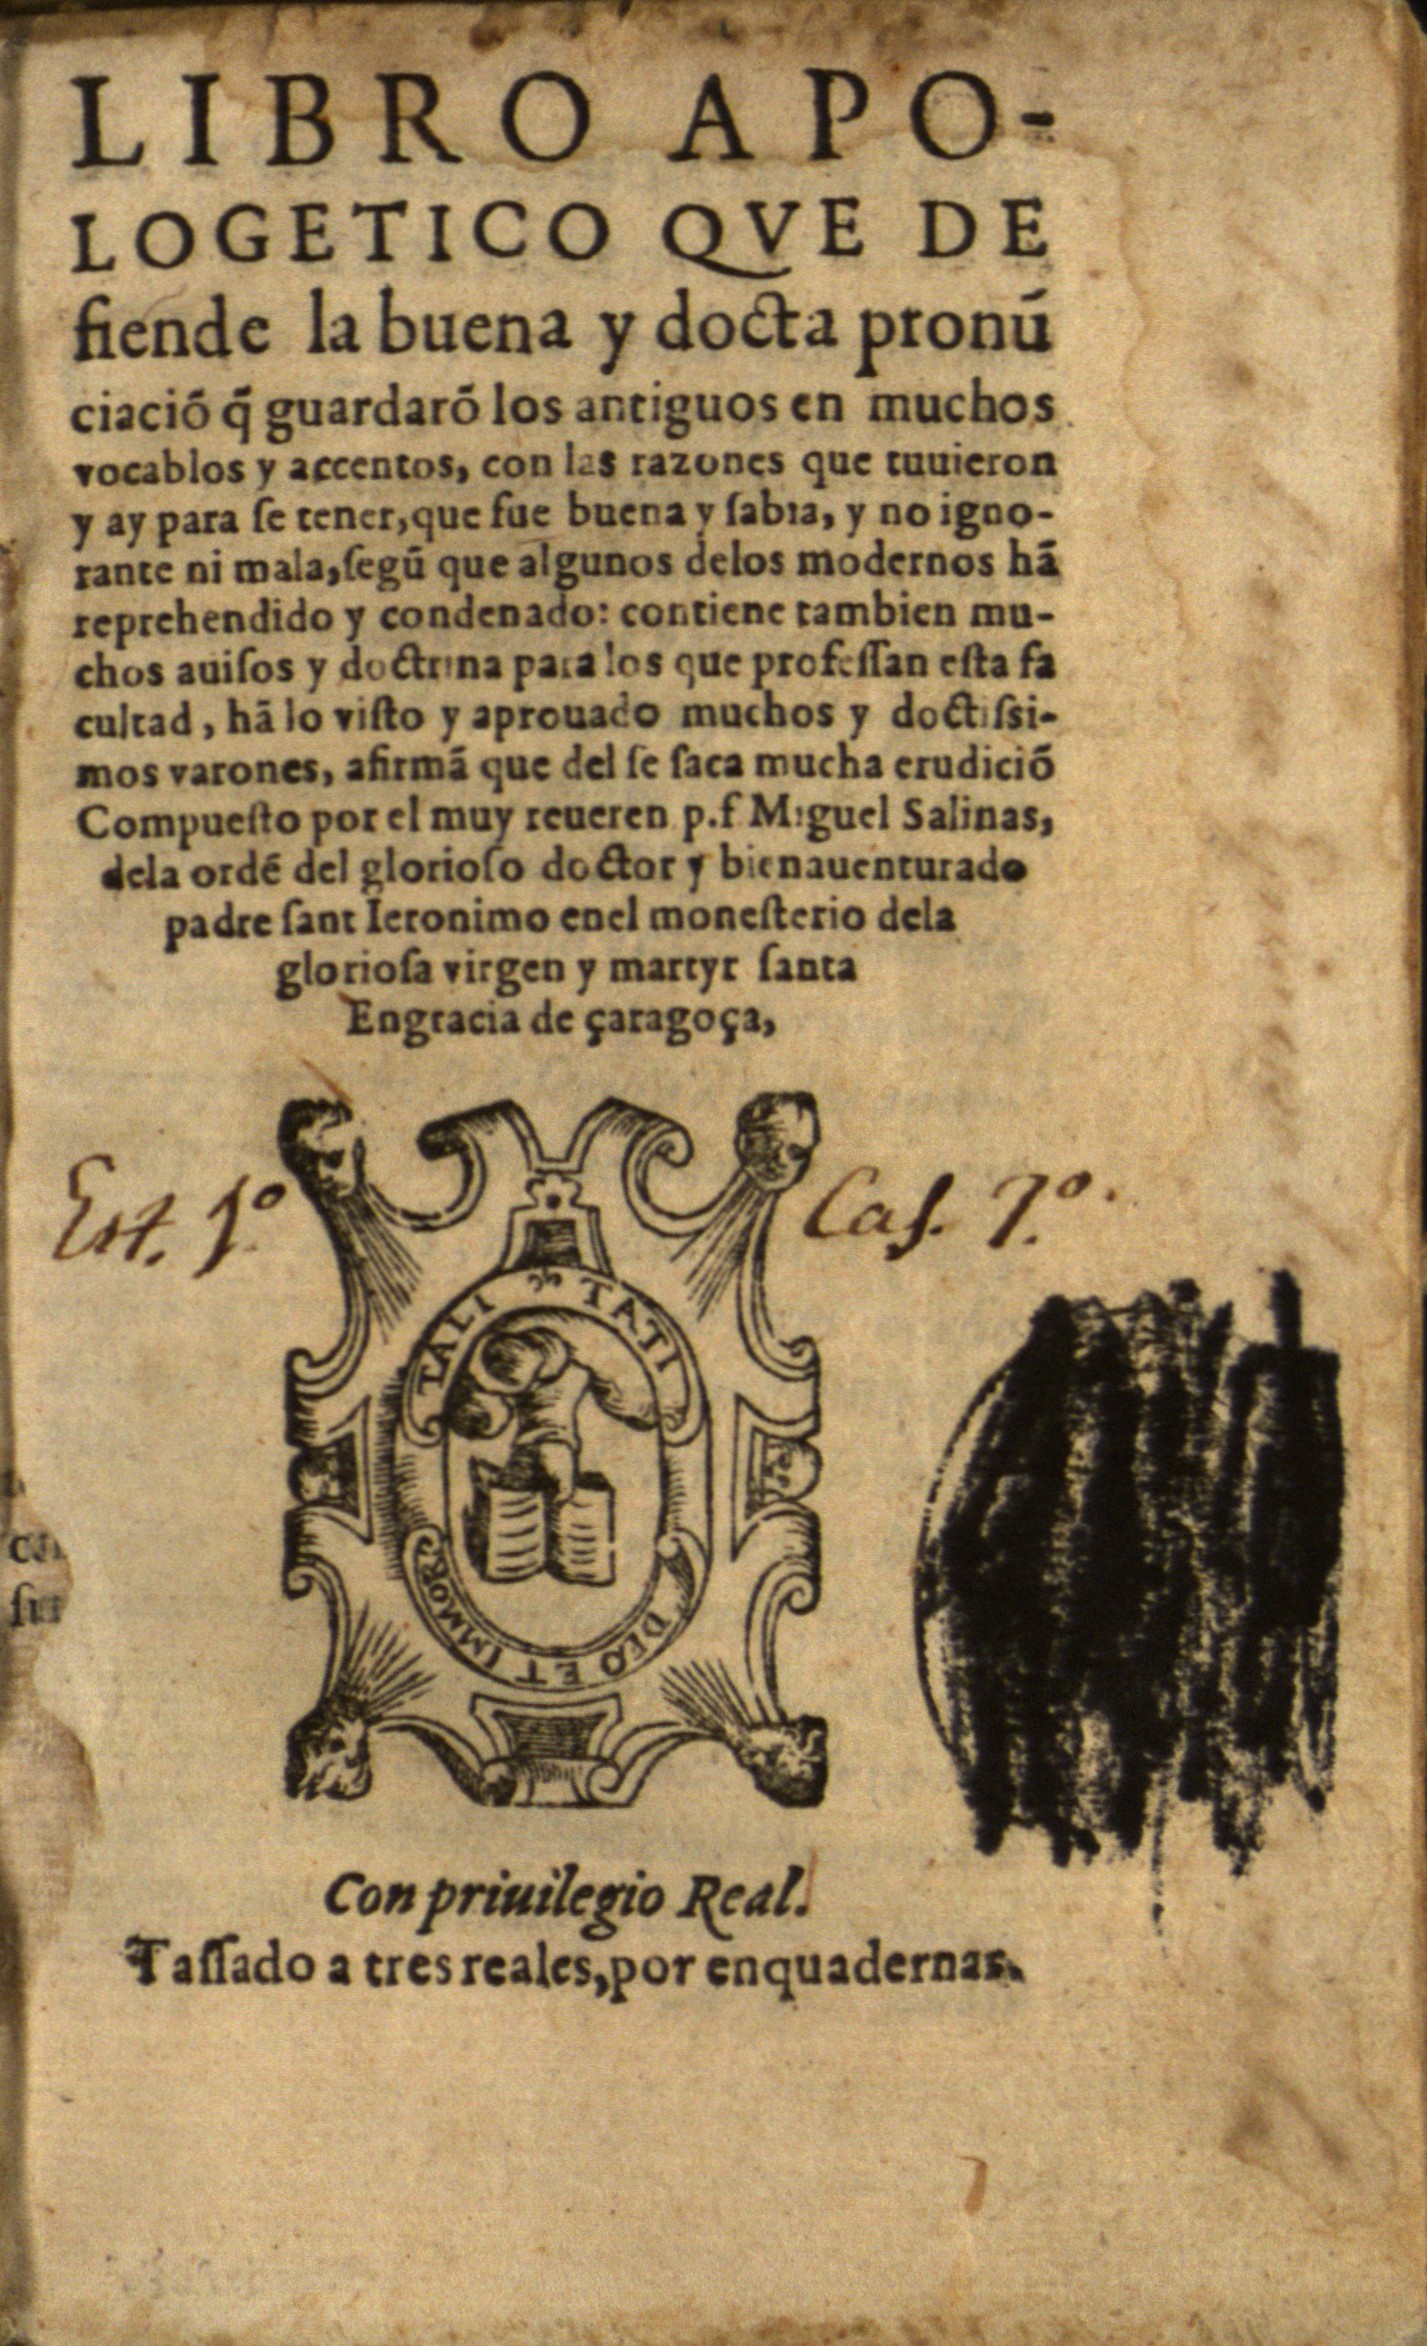 Libro apologetico que defiende la buena y docta pronu[n]ciacio[n] , 1563